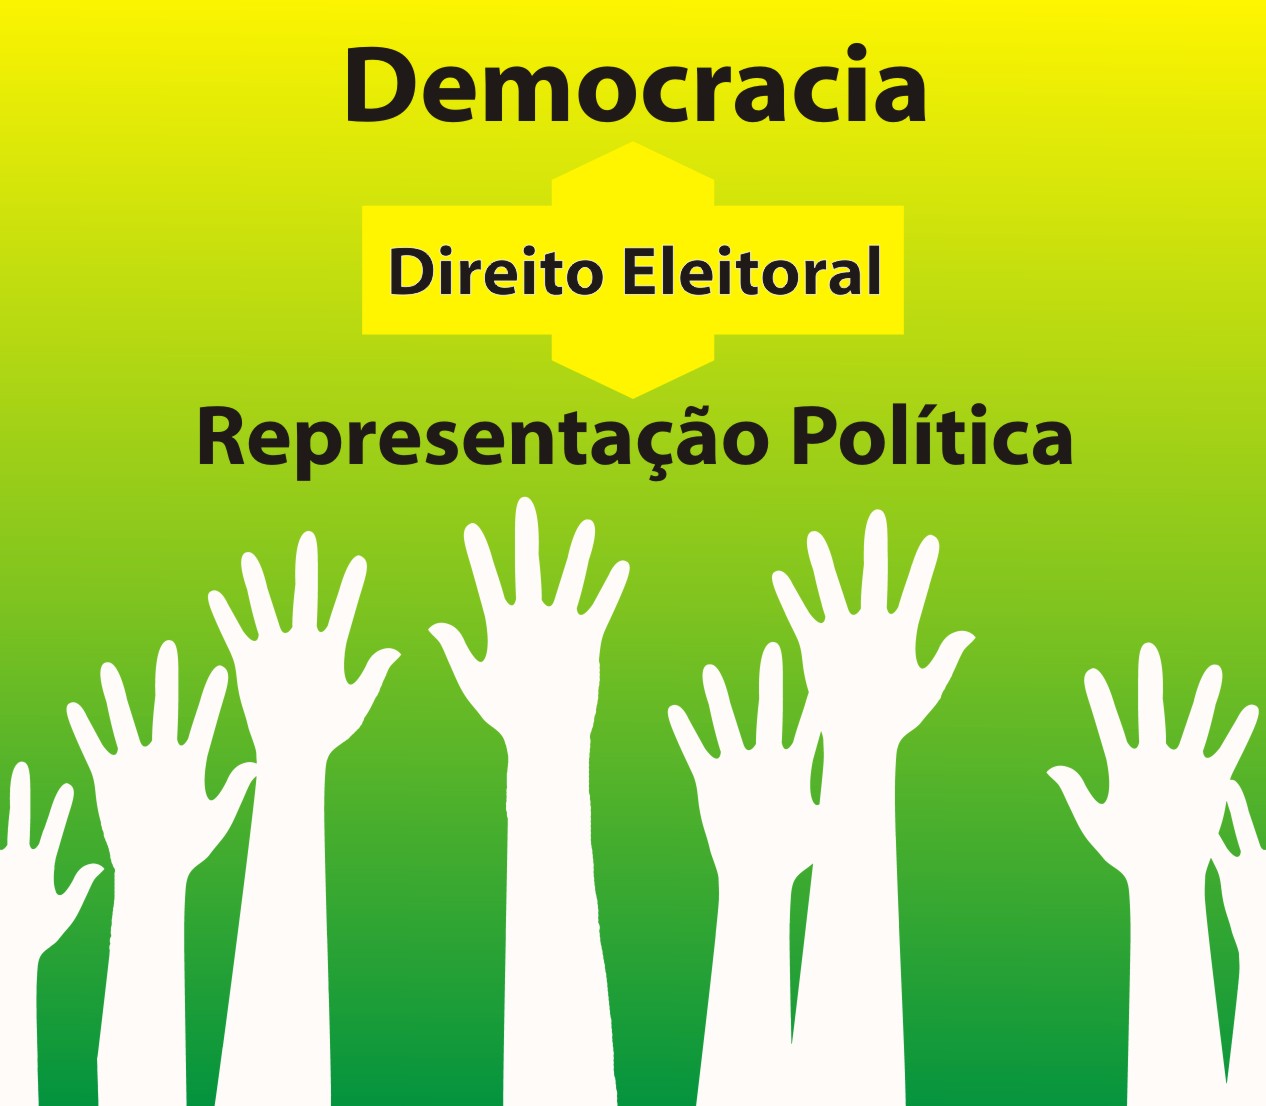 O Direito Eleitoral como elo entre a democracia e a representação